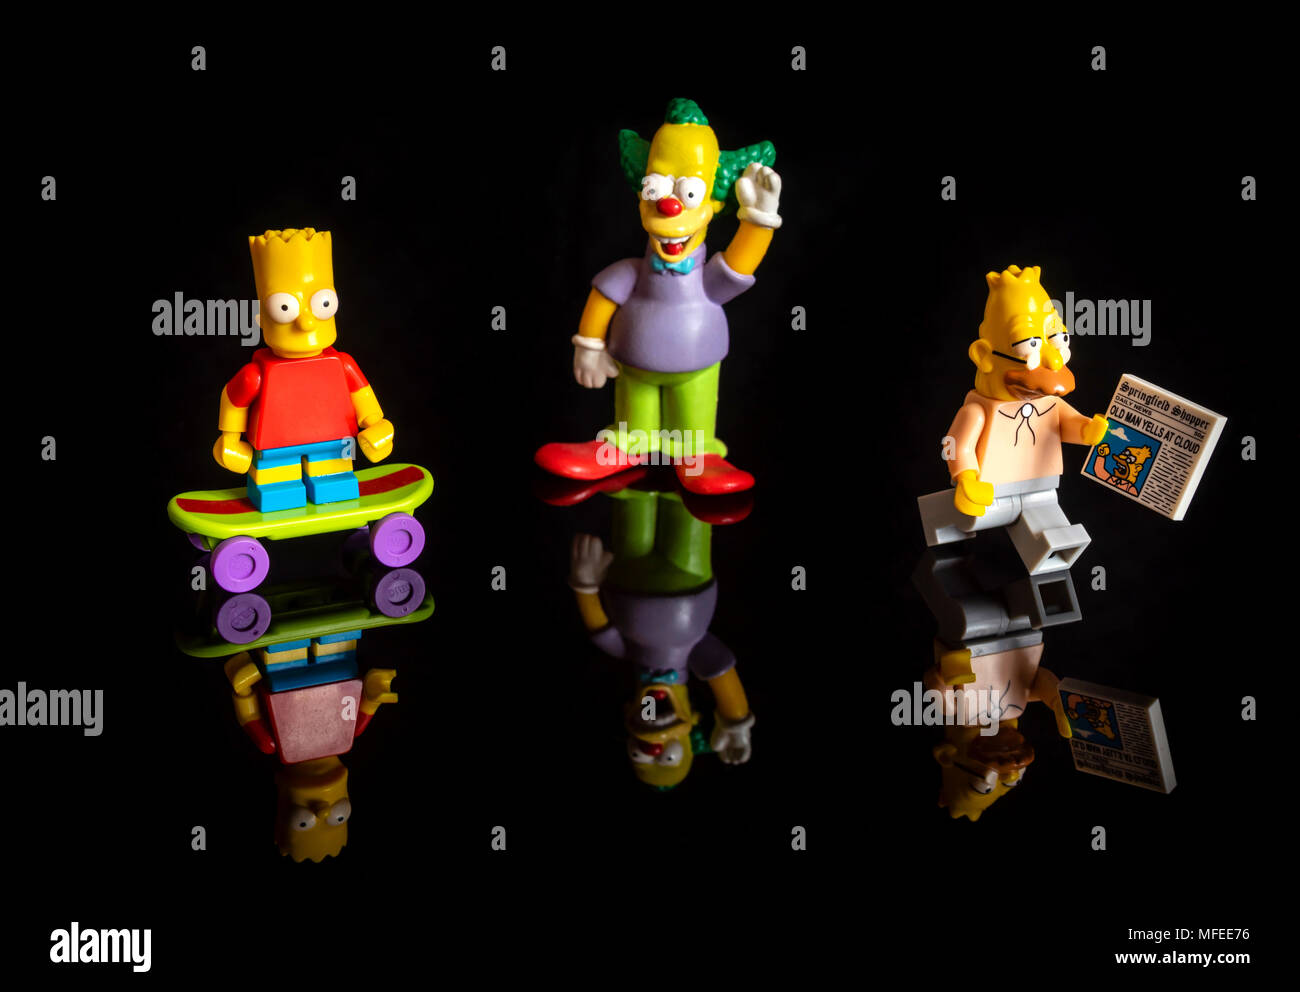 Die Simpsons Lego miniatur Figuren (Bart Simpson, Krusty der Clown und Grampa Simpson) auf reflektierenden schwarzen Hintergrund Stockfoto